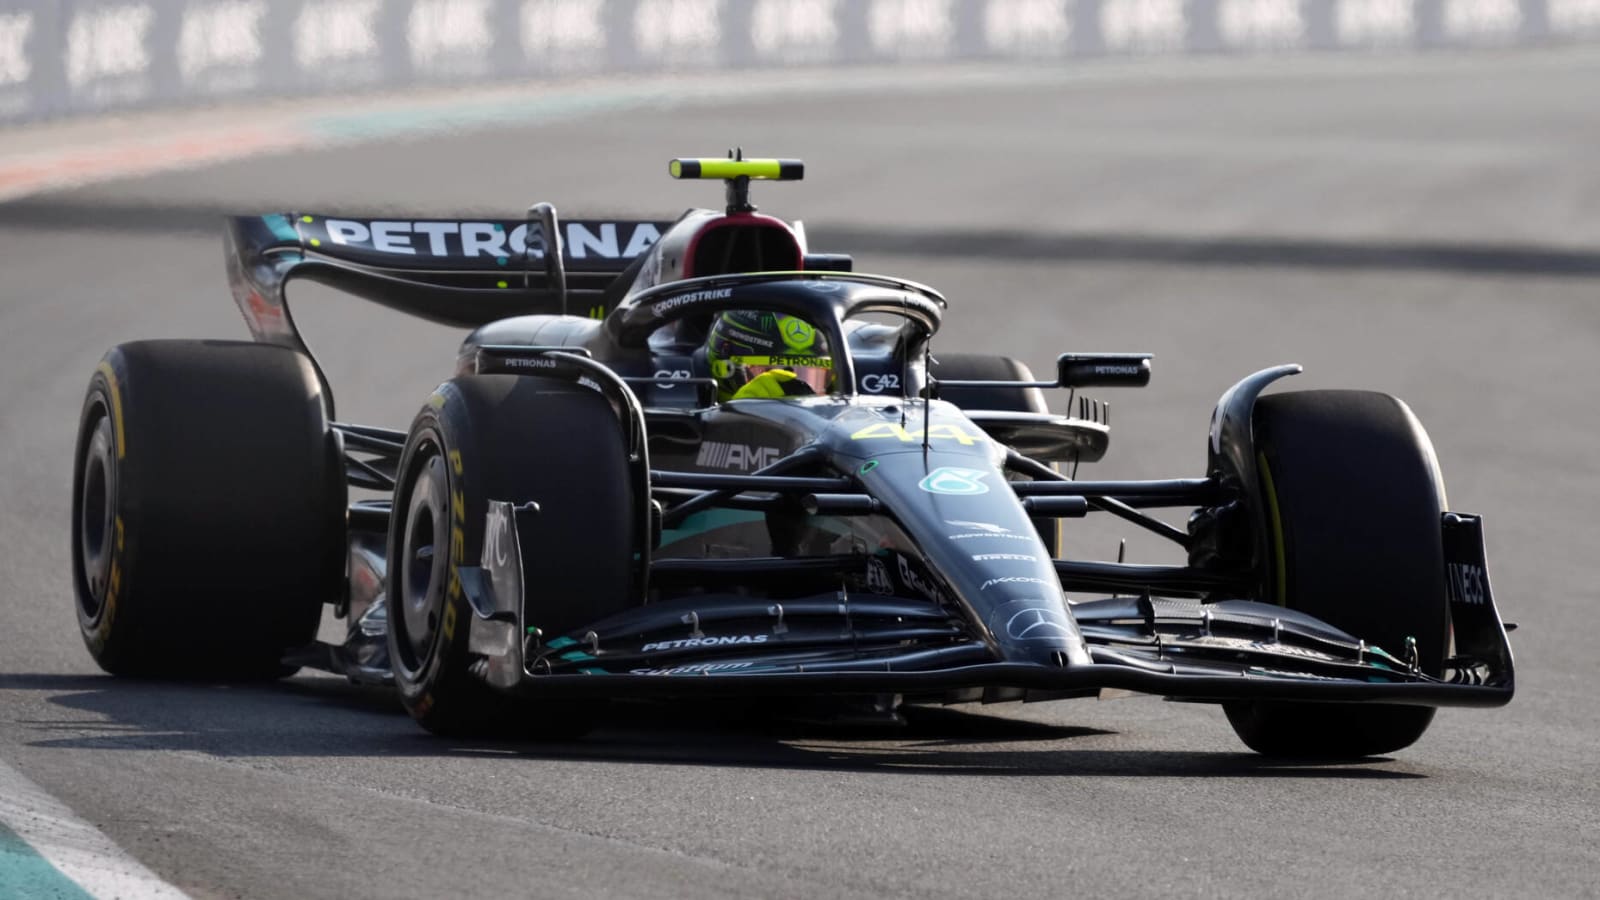 Mercedes renaissance colors quiet Spanish Grand Prix